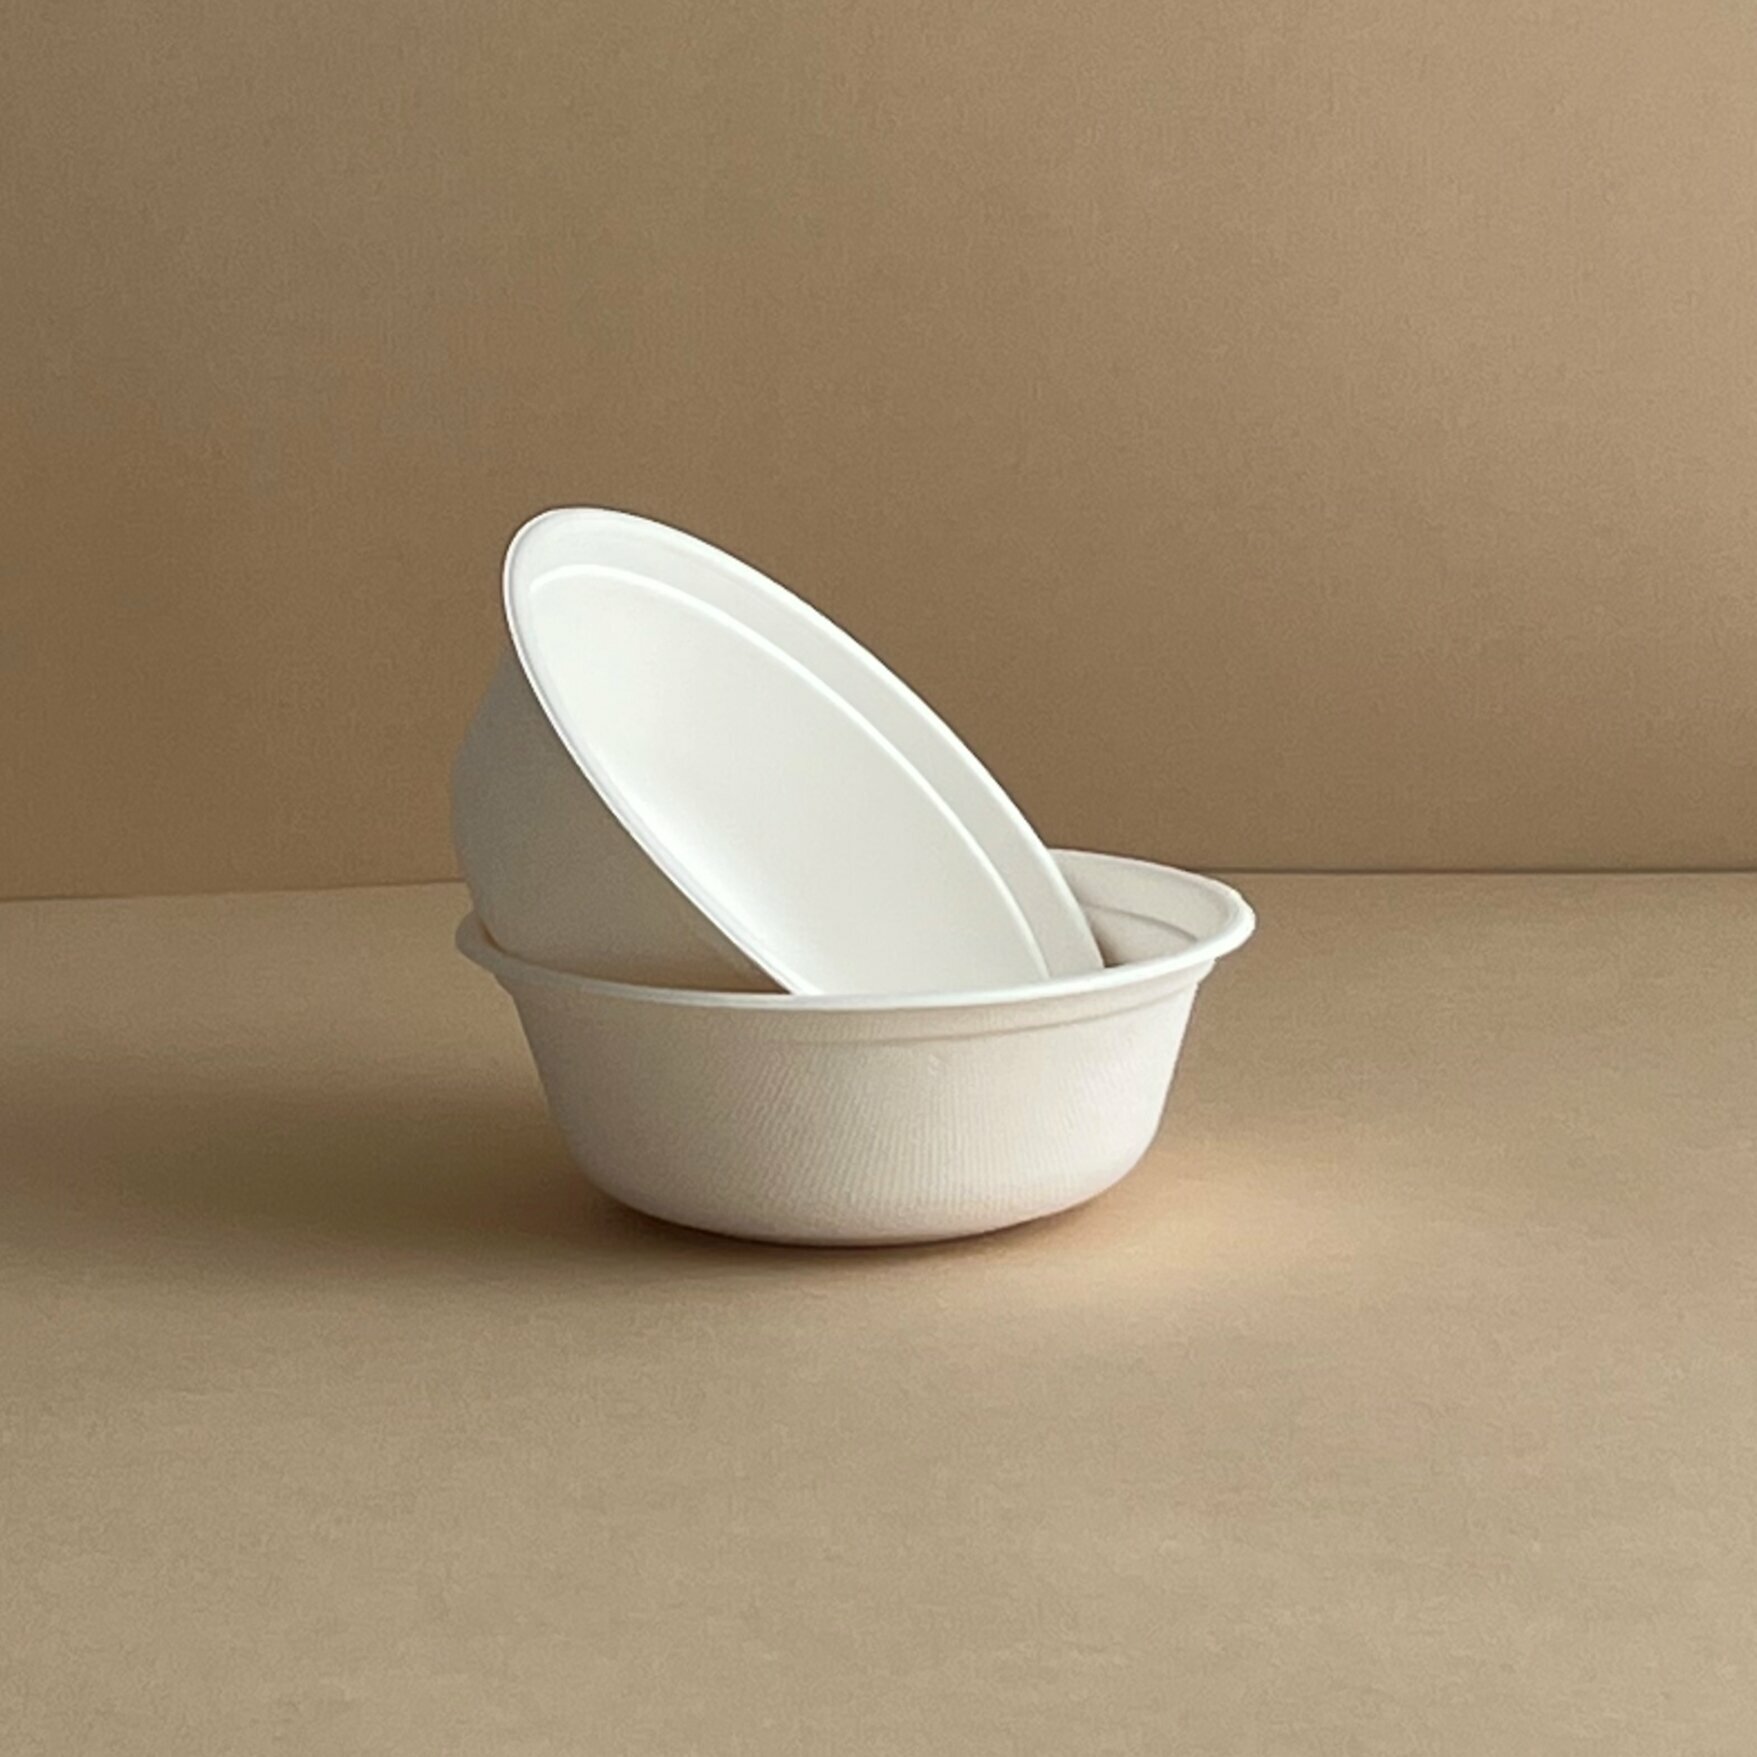 Одноразовая посуда / Тарелка глубокая, миска для супа одноразовая биоразлагаемая бумажная, объем 500 мл, 30 шт. в упаковке - фотография № 2